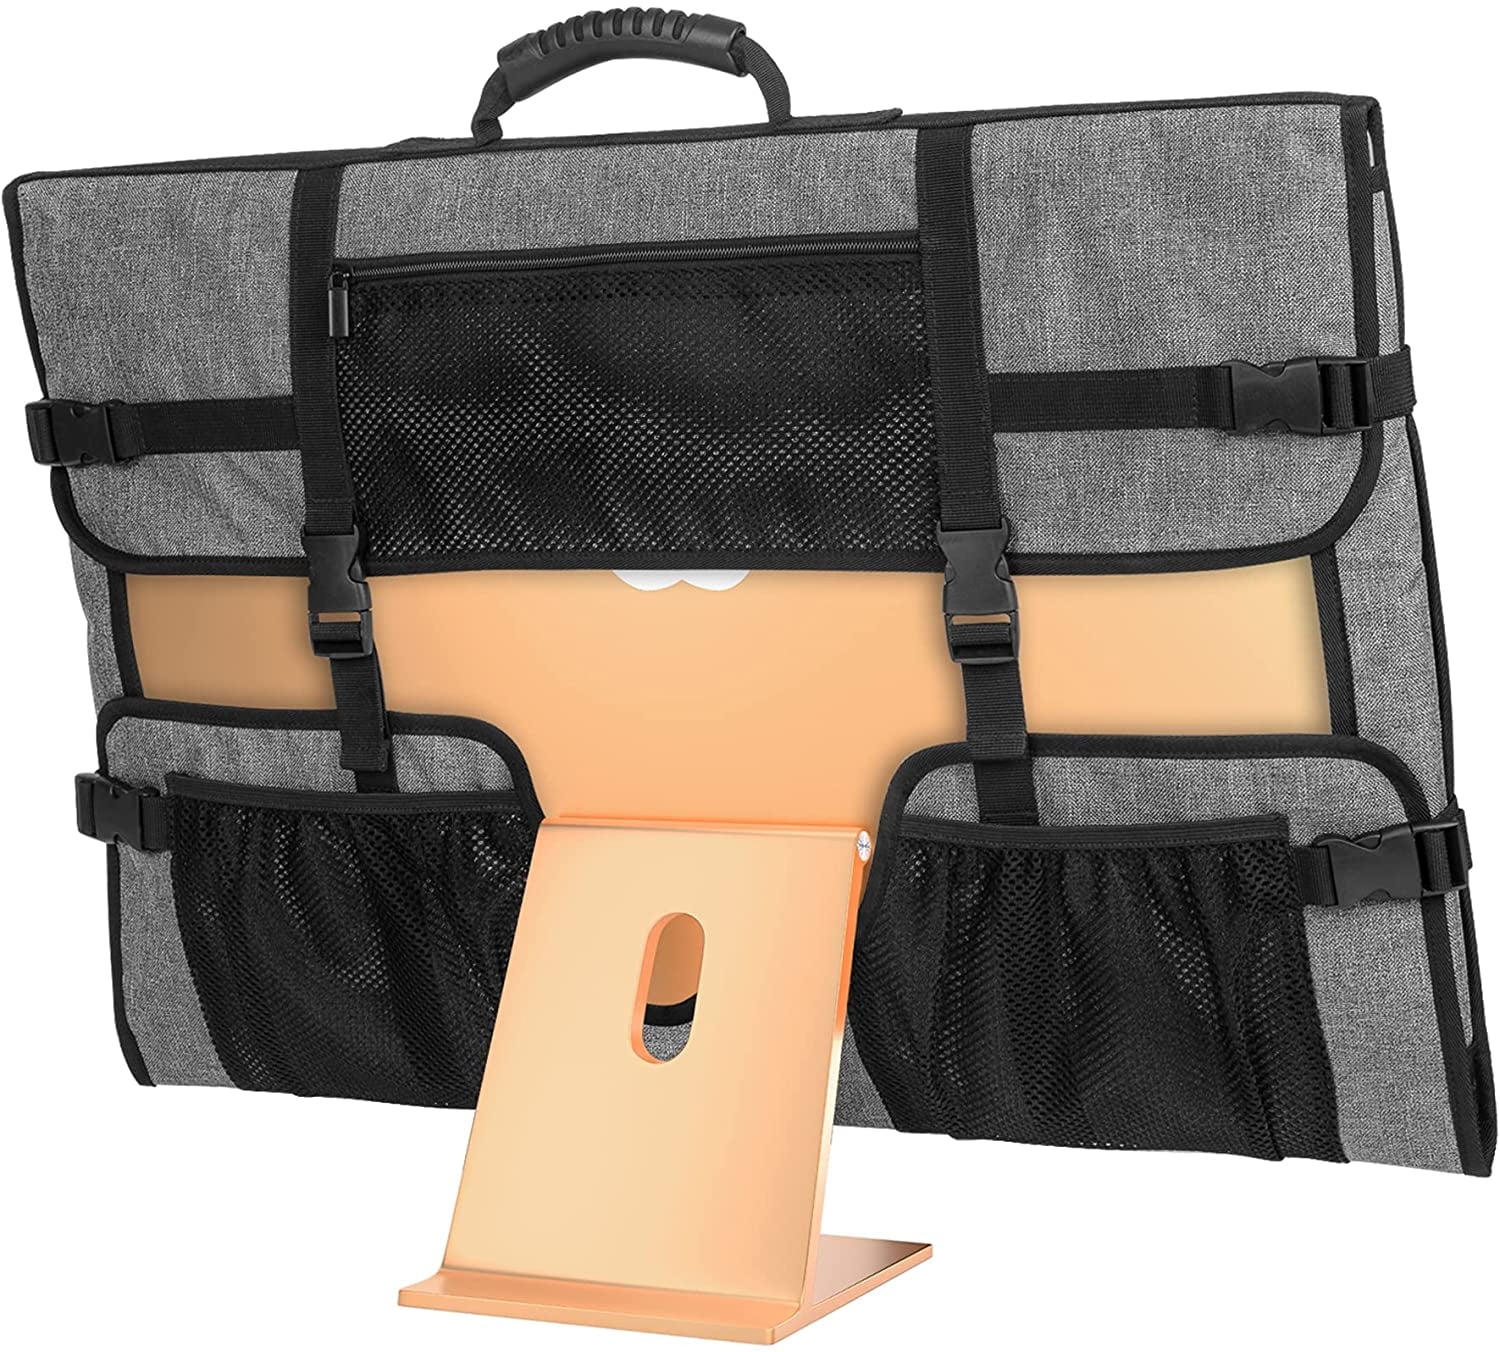 Apple 27" iMac Carry Case - Padded Shoulder Bag | eBay